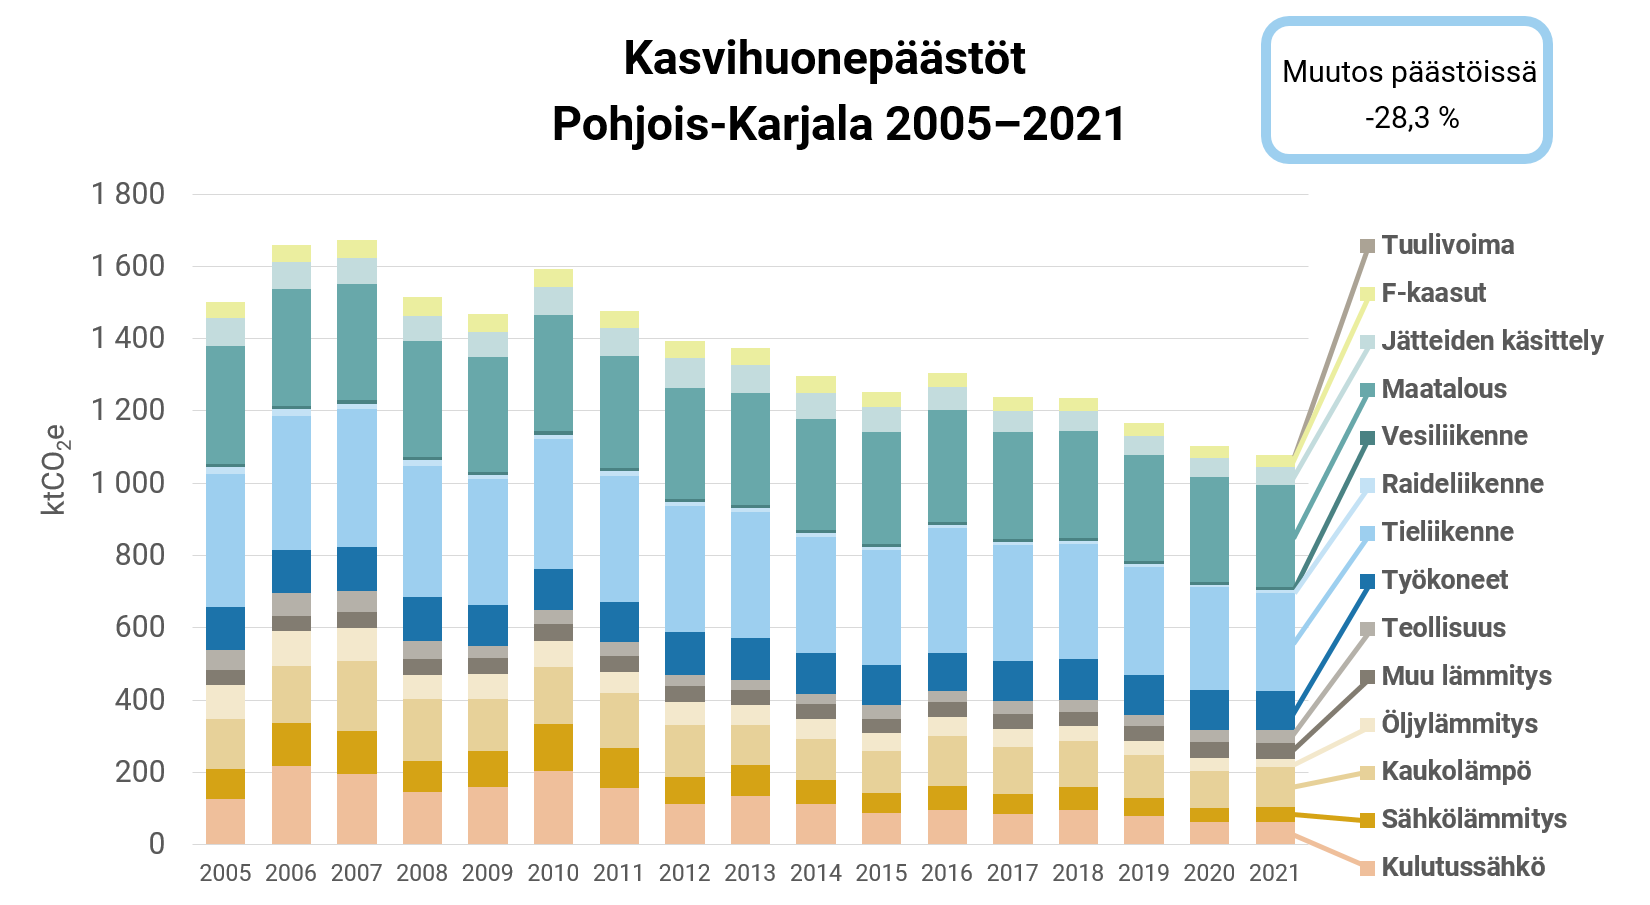 Kaavio osoittaa Pohjois-Karjalan kasvihuonepäästöjen pudonneen -28,3 % vuosina 2005-2021.